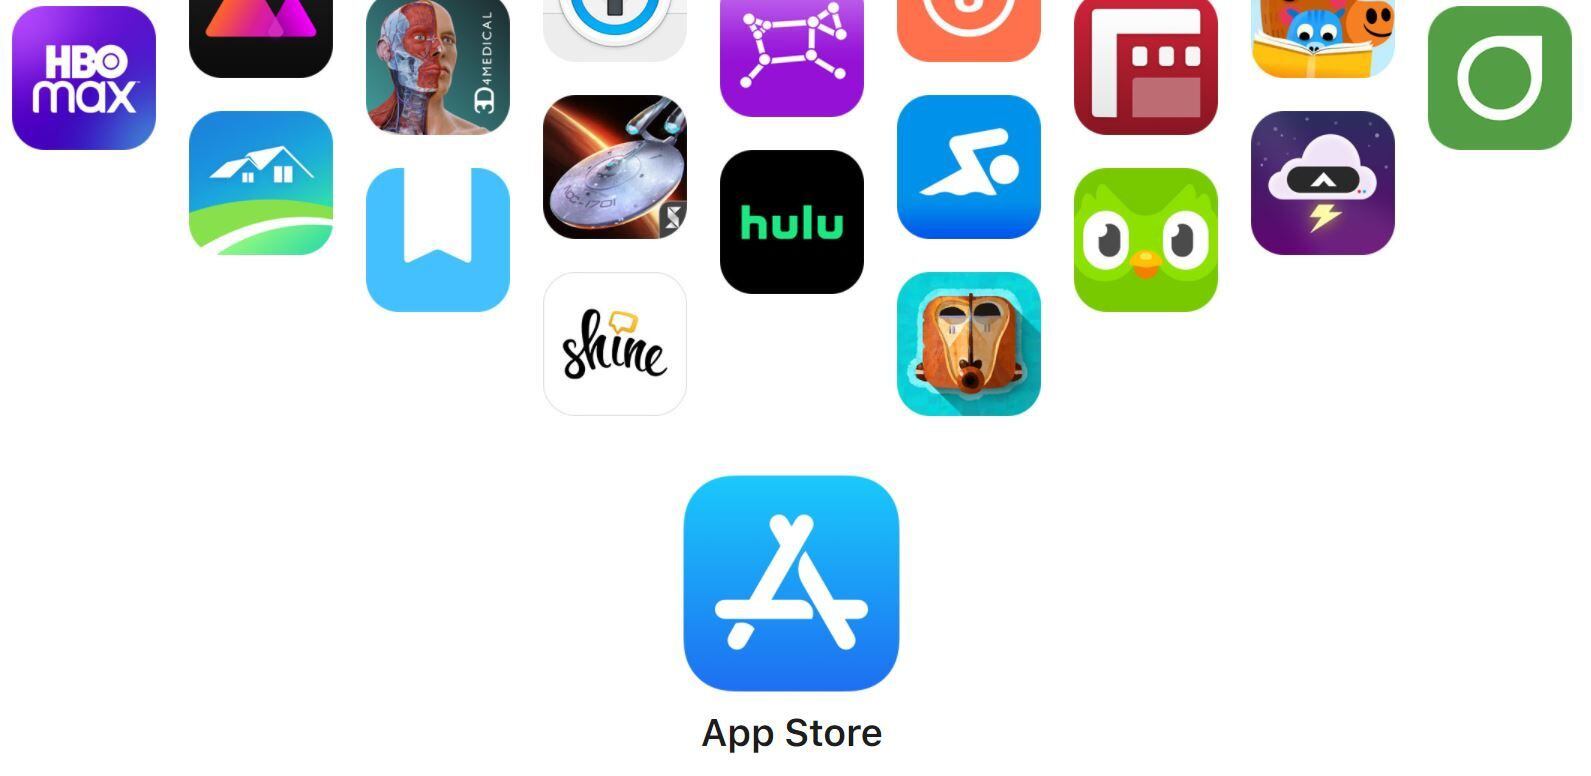 La App Store de Apple es una plataforma de distribución de aplicaciones de alta calidad. (Apple)